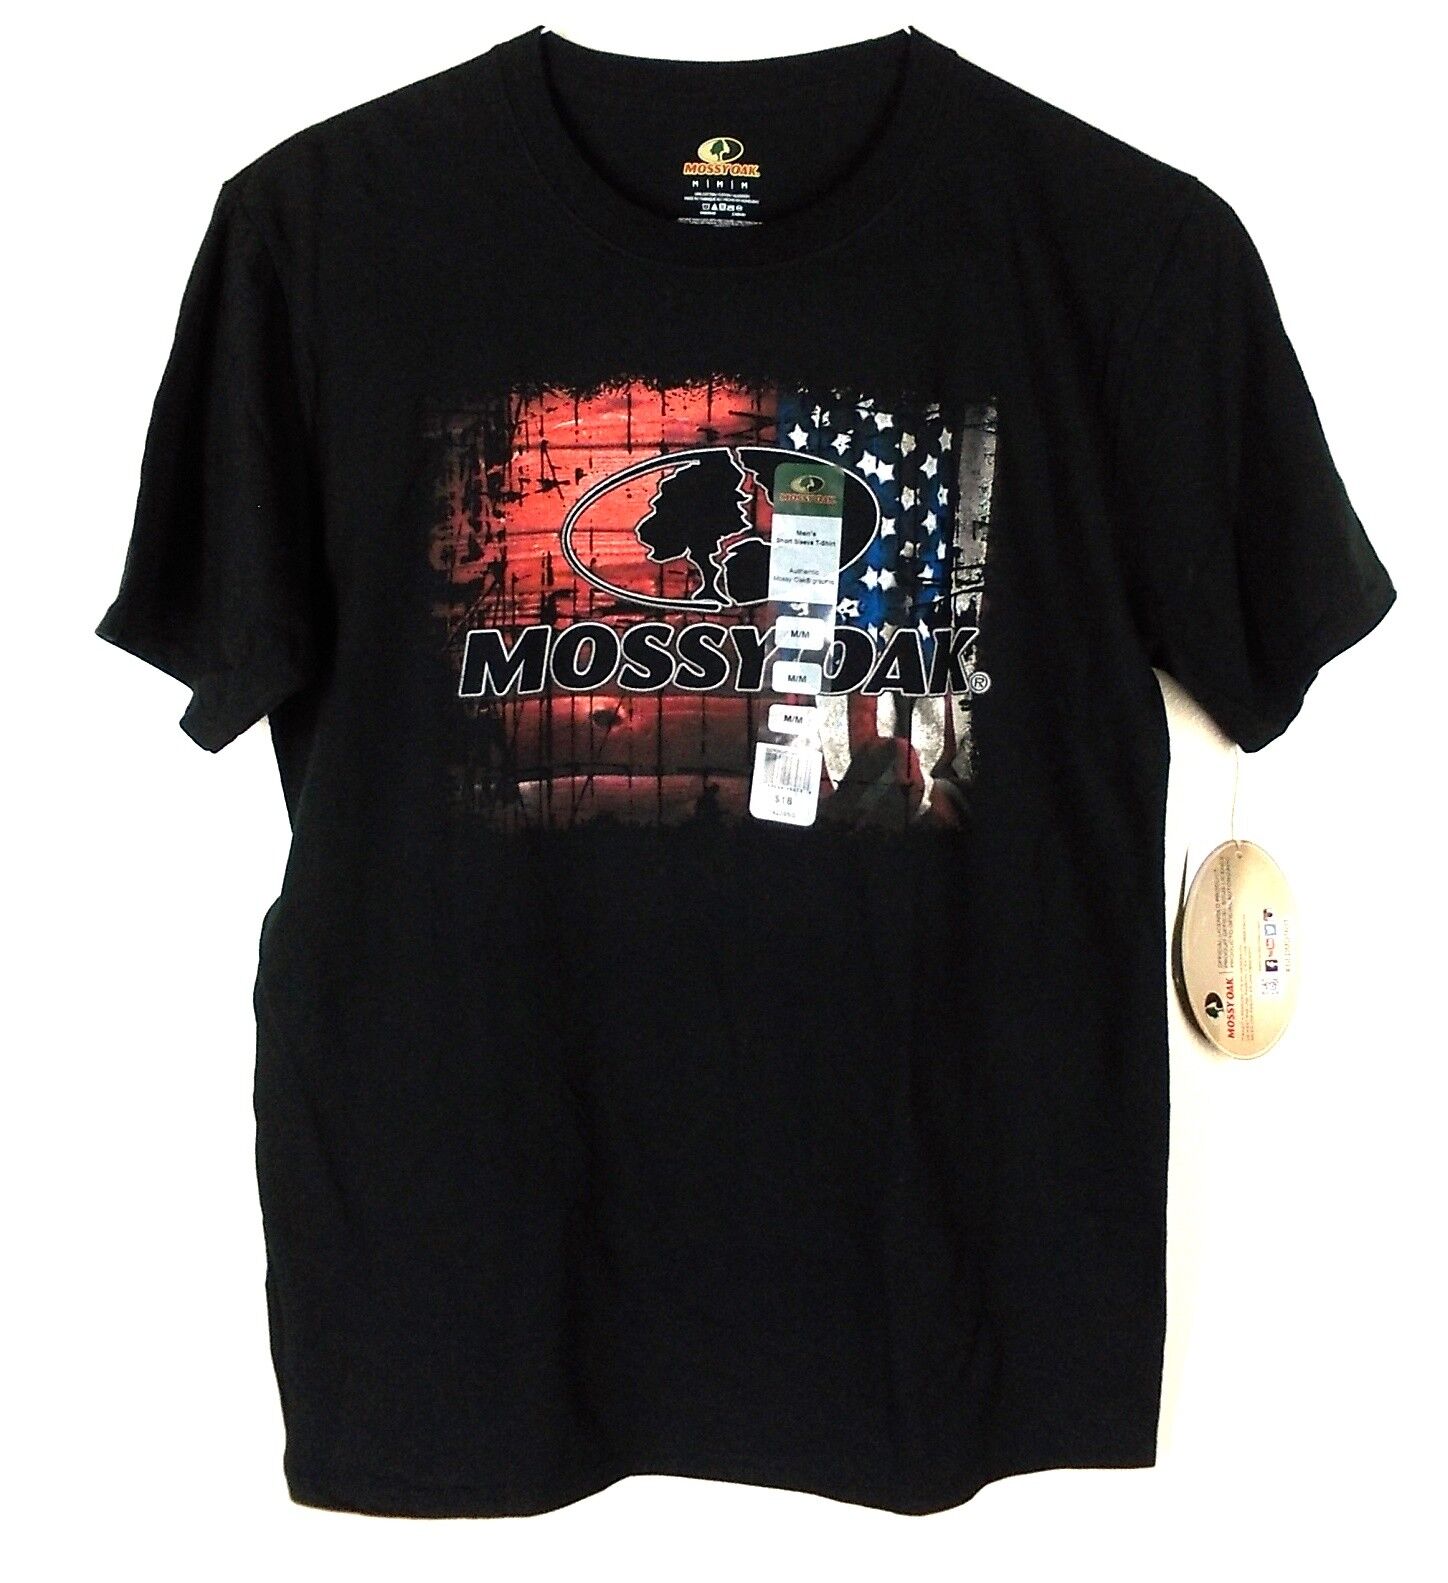 Mossy Oak Men's Short Sleeve T-Shirt Size M Authentic Graphic Black Patriotic